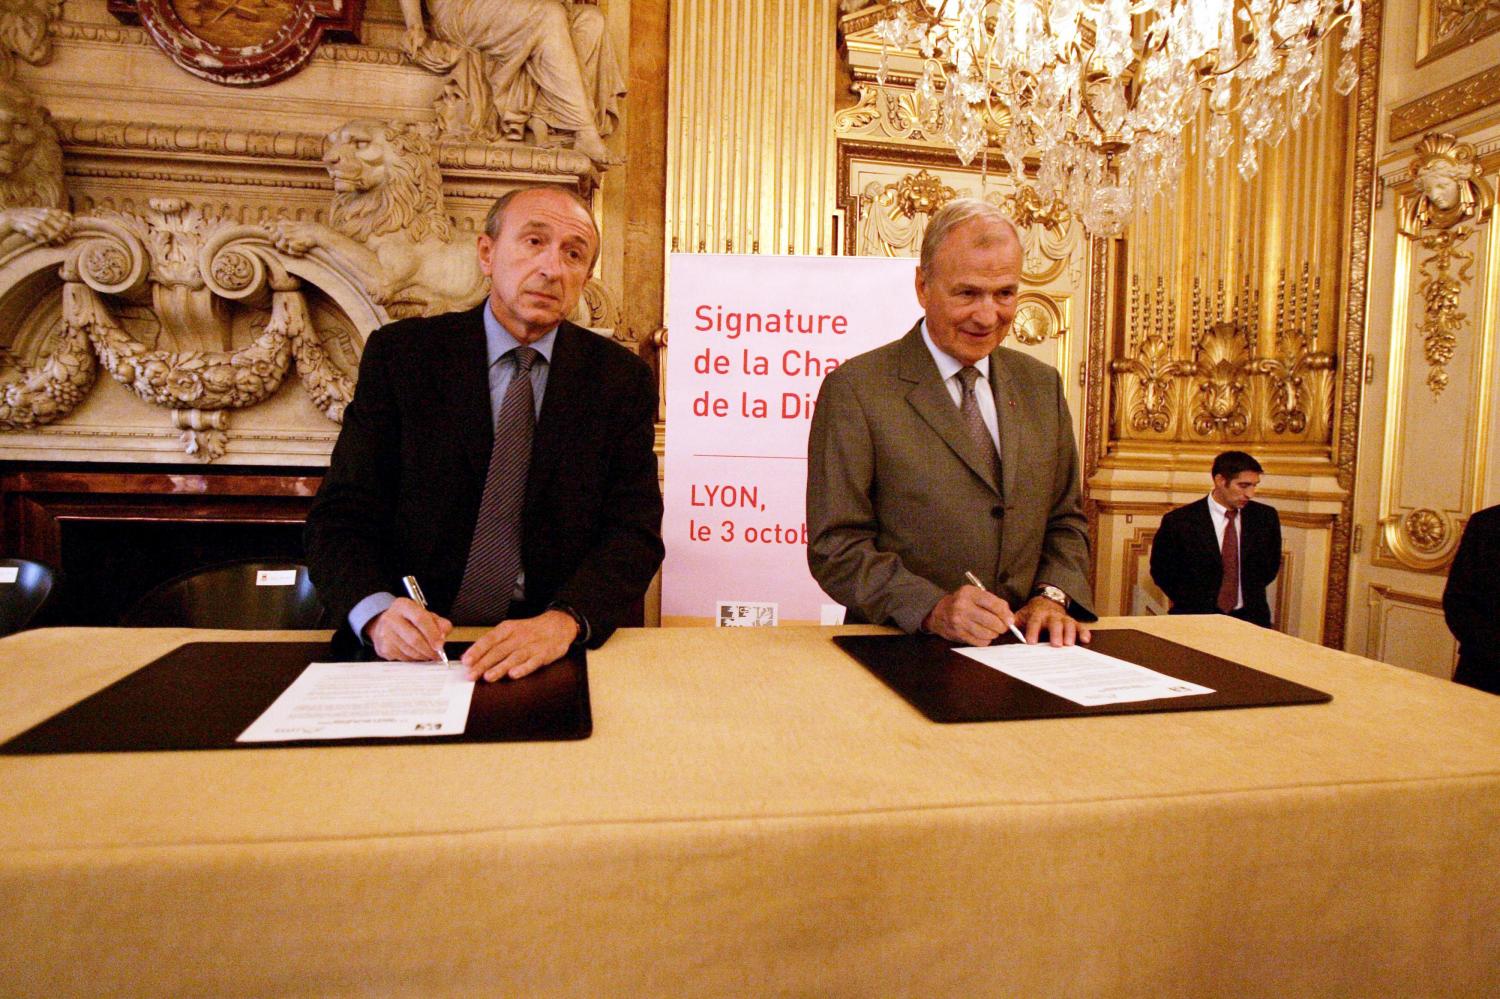 [Signature de la charte de la diversité à l'Hôtel de ville de Lyon]